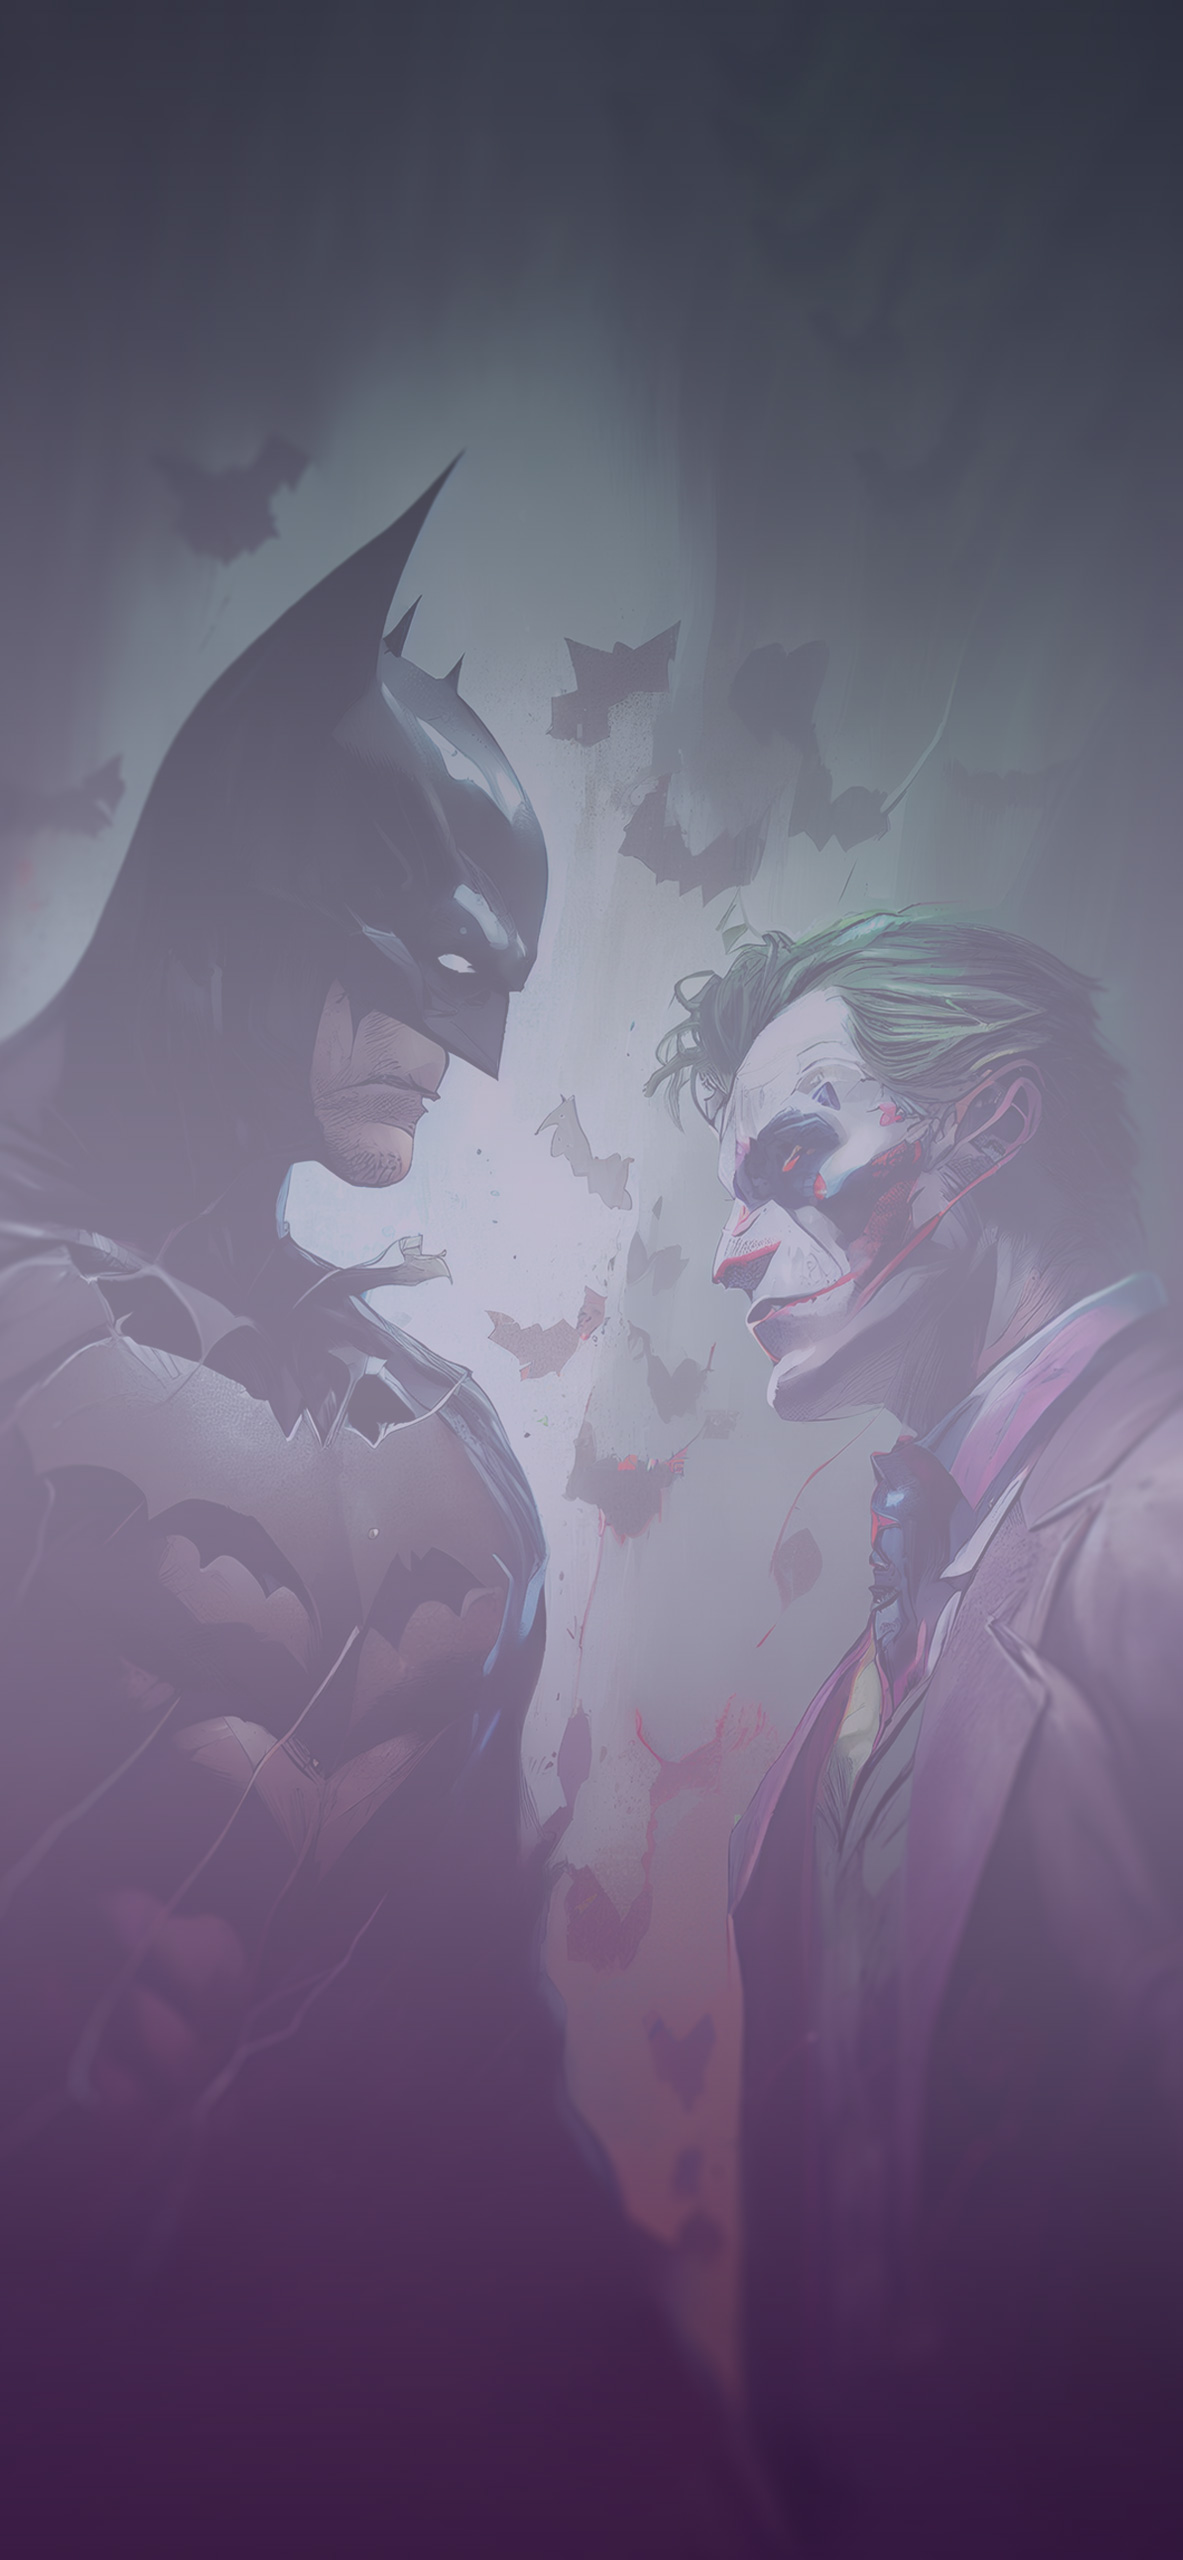 batman vs joker aesthetic background